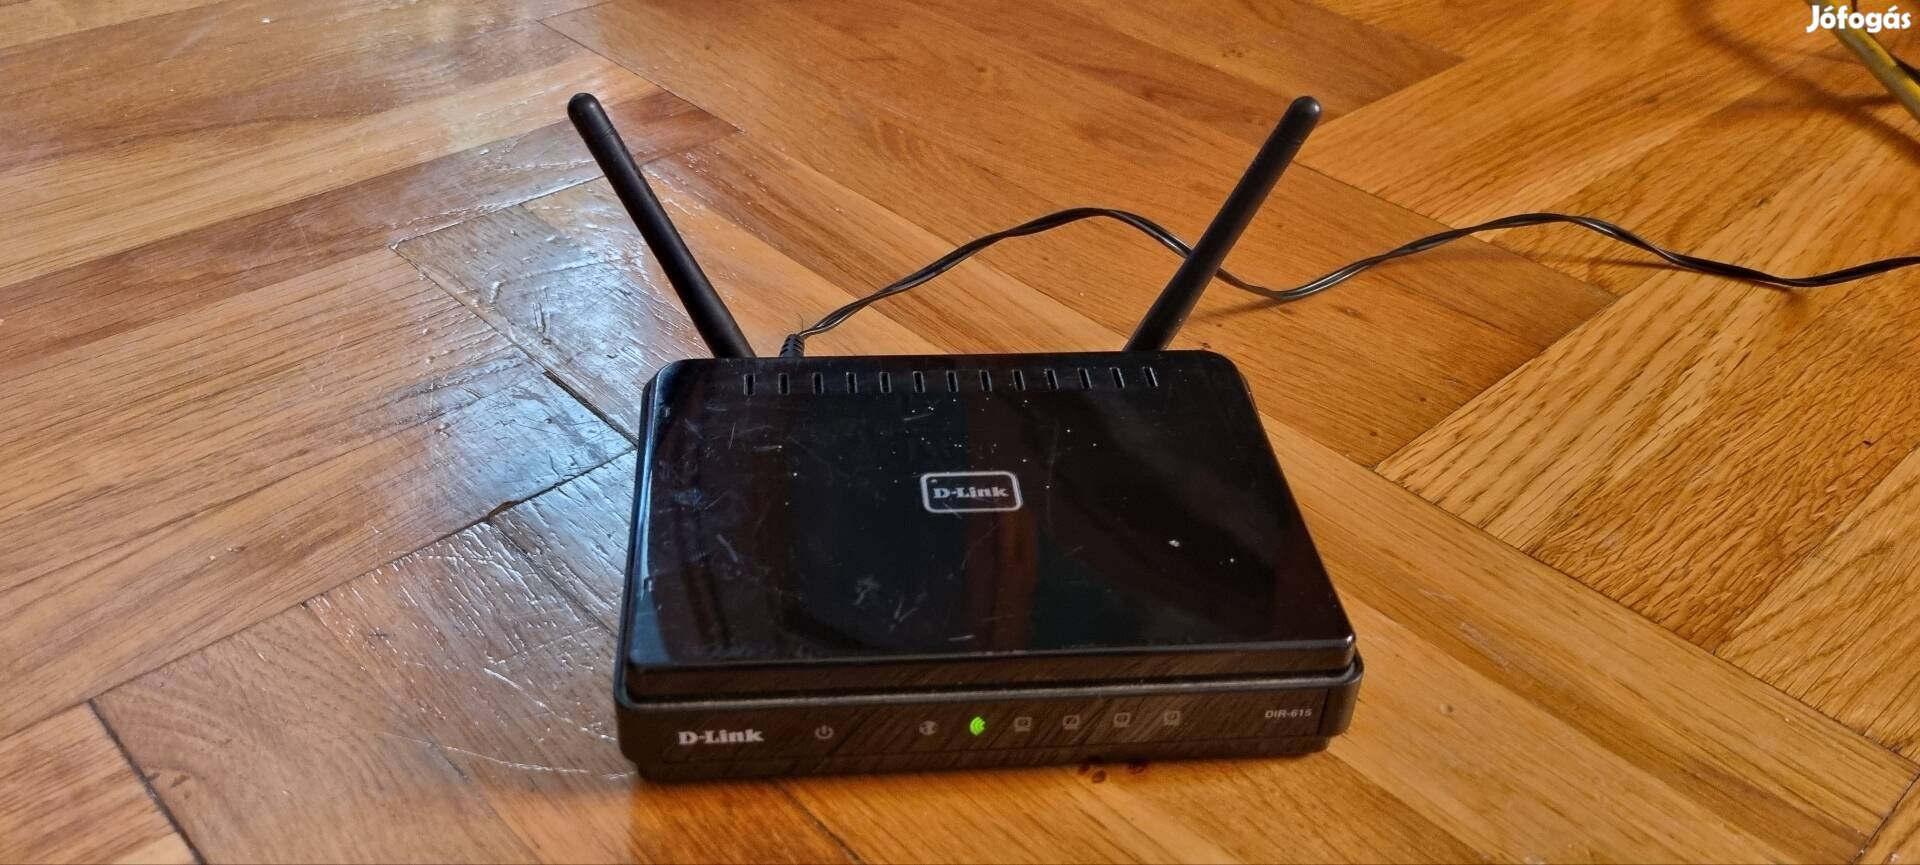 D-Link DSL-615 wifi router 